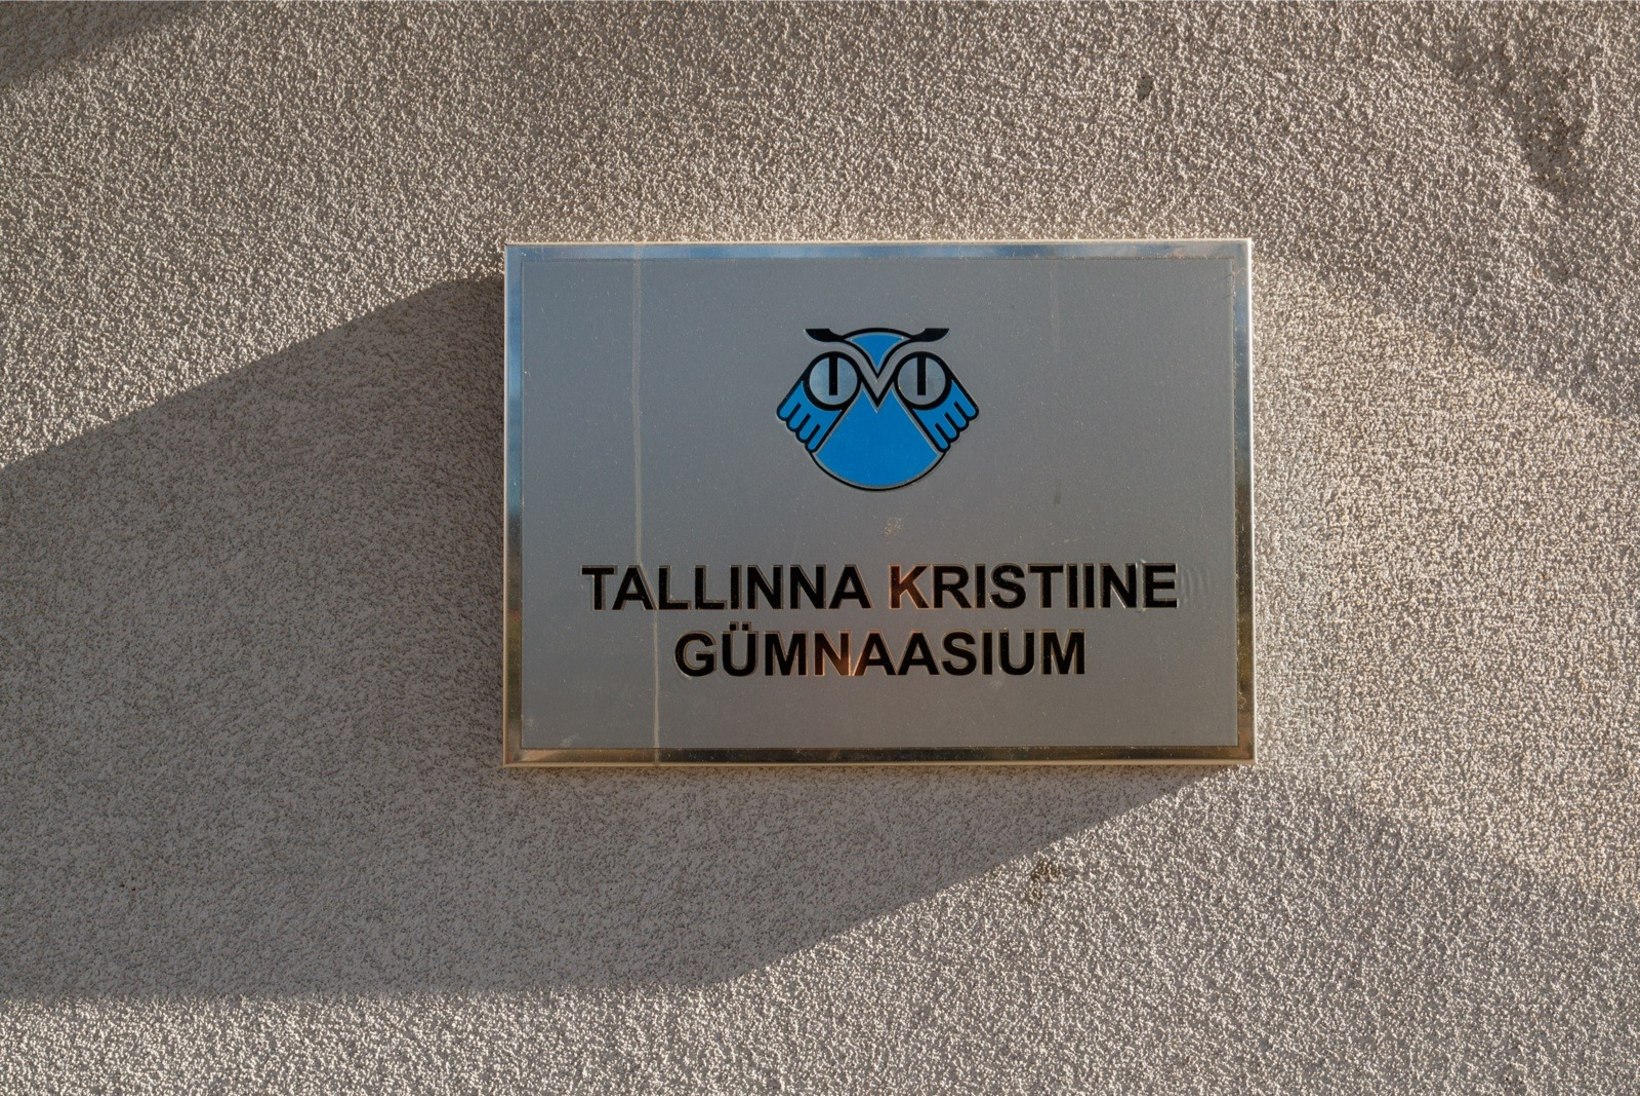 Koroonaviirusega Tallinna õpilane on kodusel jälgimisel, Kristiine gümnaasium suleti kaheks nädalaks. Koolikaaslane: „Natuke on hirm küll.“